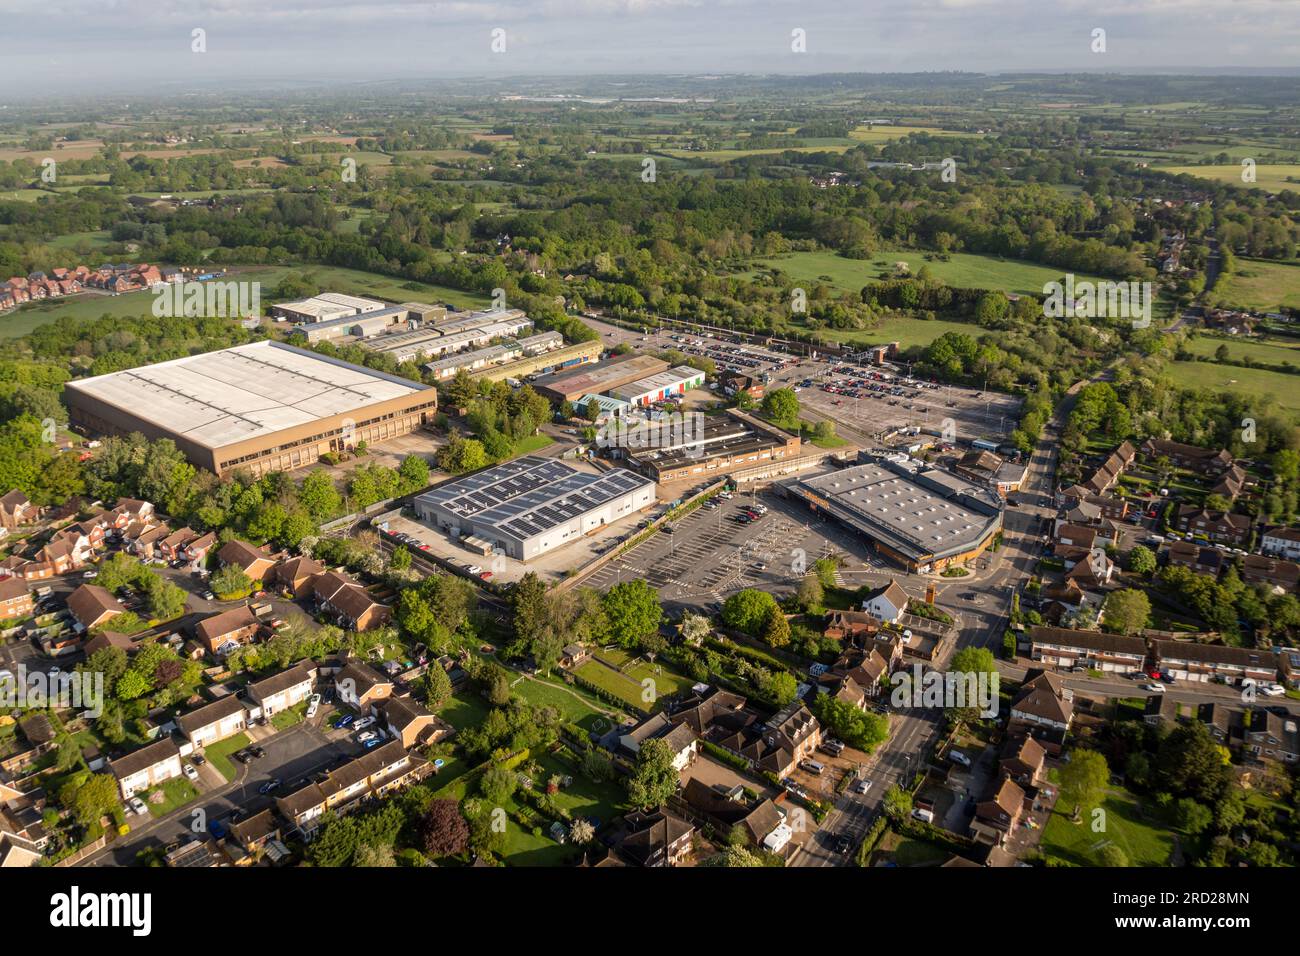 Aerial view of the villge of Staplehurst, Kent, UK Stock Photo